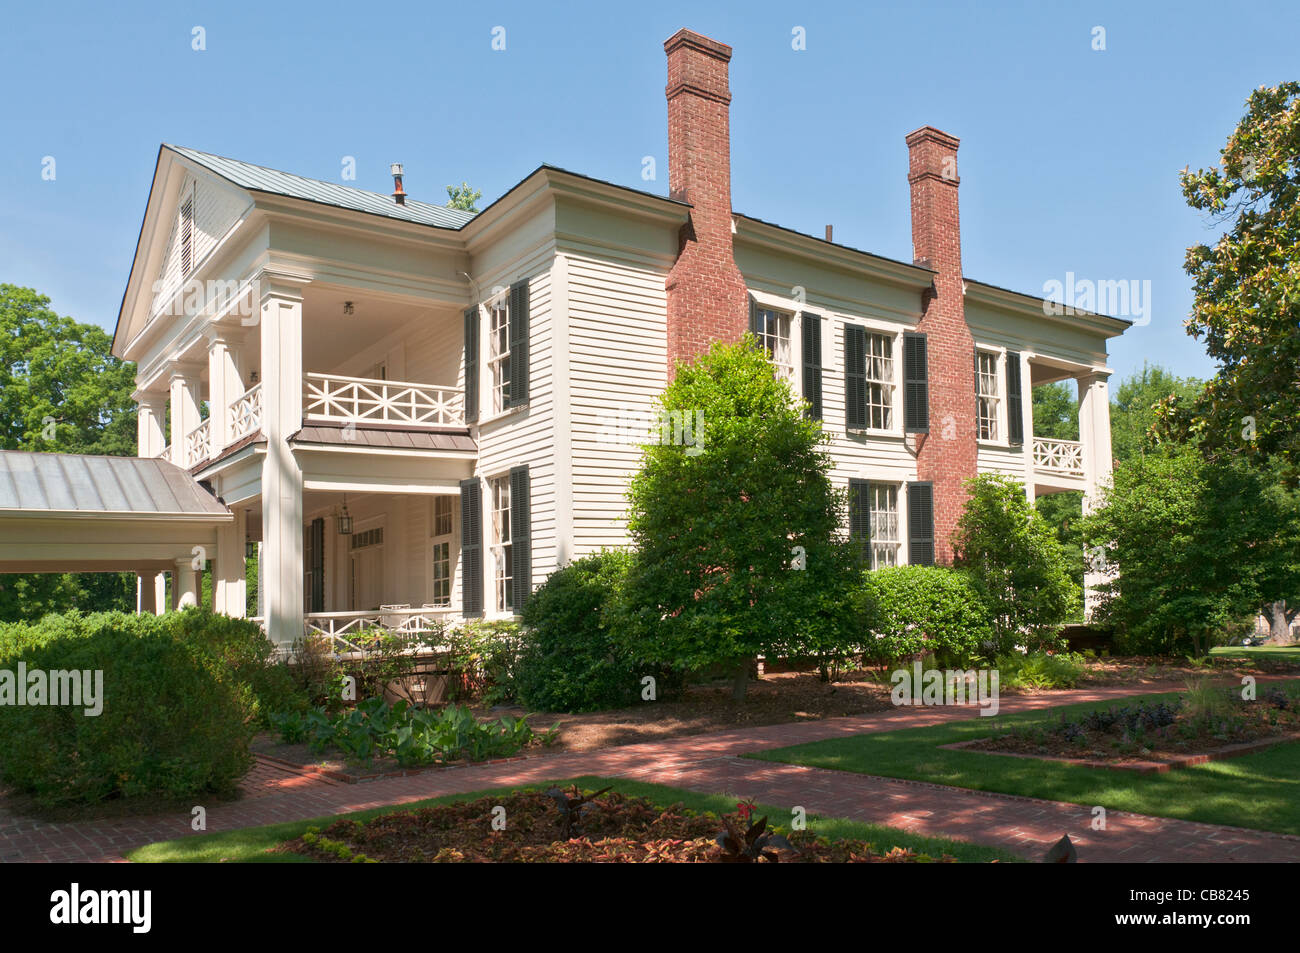 Alabama, Birmingham, Arlington Antebellum Home and Gardens, Birmingham, dernier Renaissance grecque antebellum home, c.1840s Banque D'Images